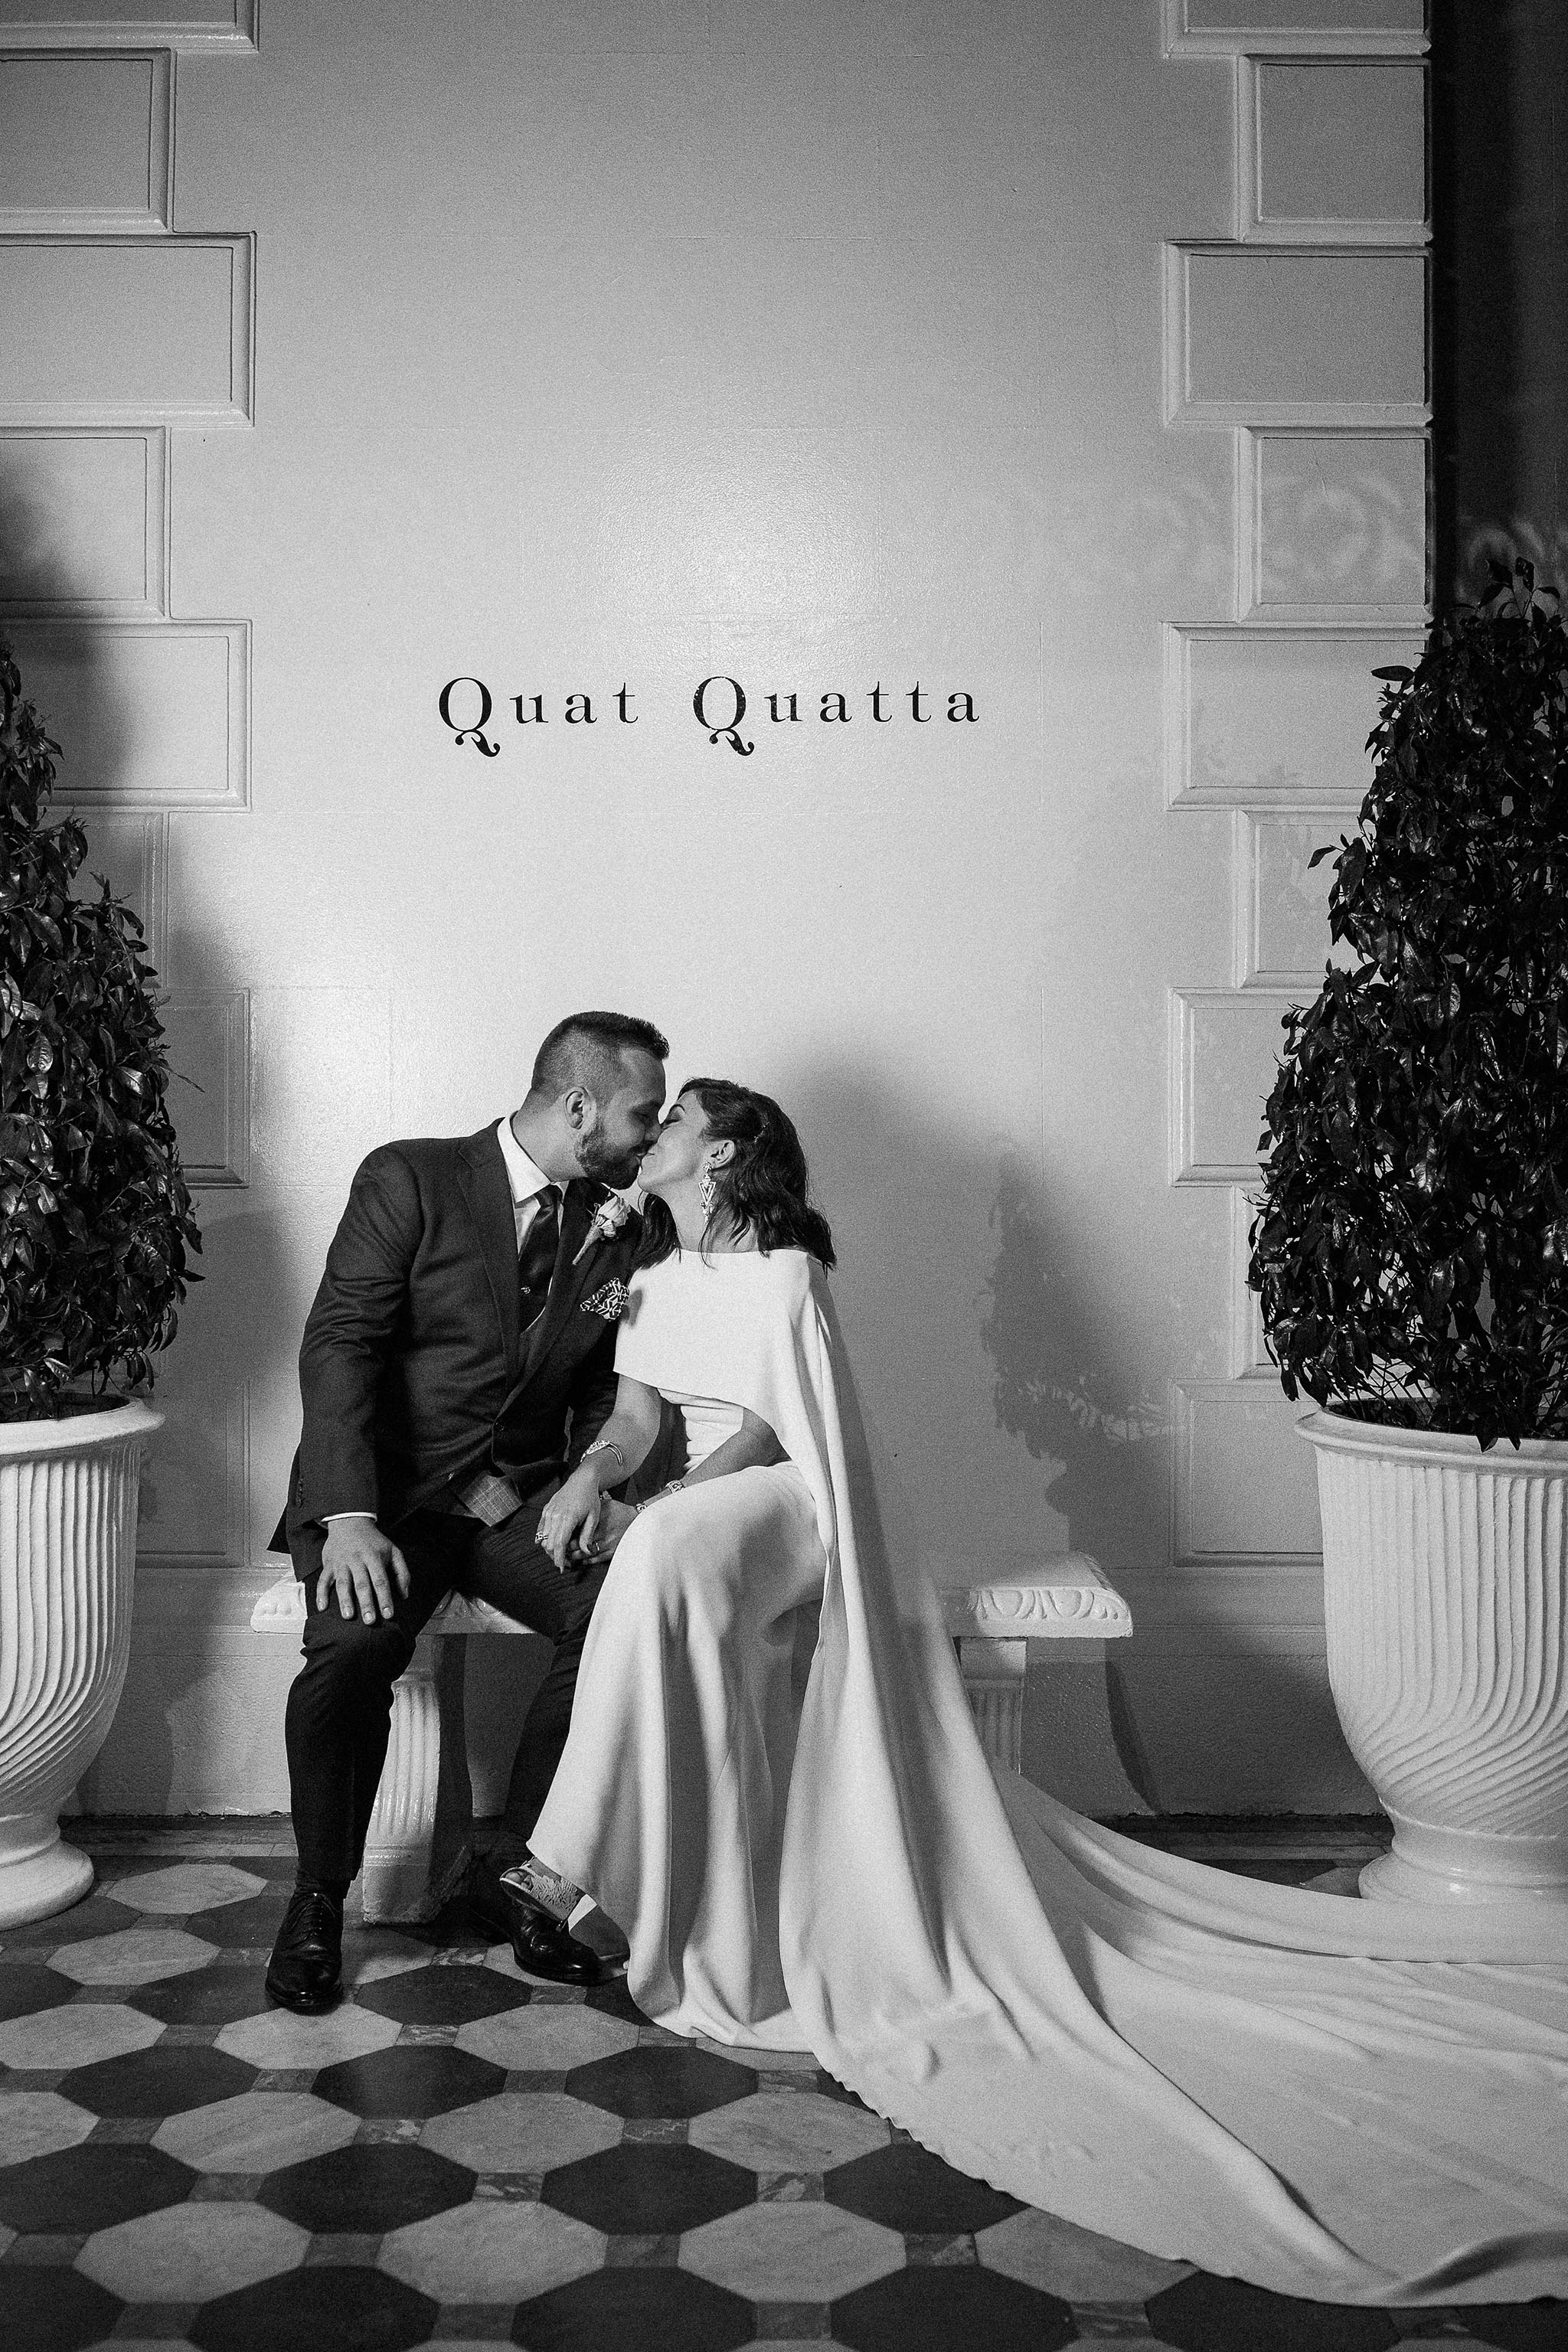 quat-quatta-night-wedding-bride-groom-portrait